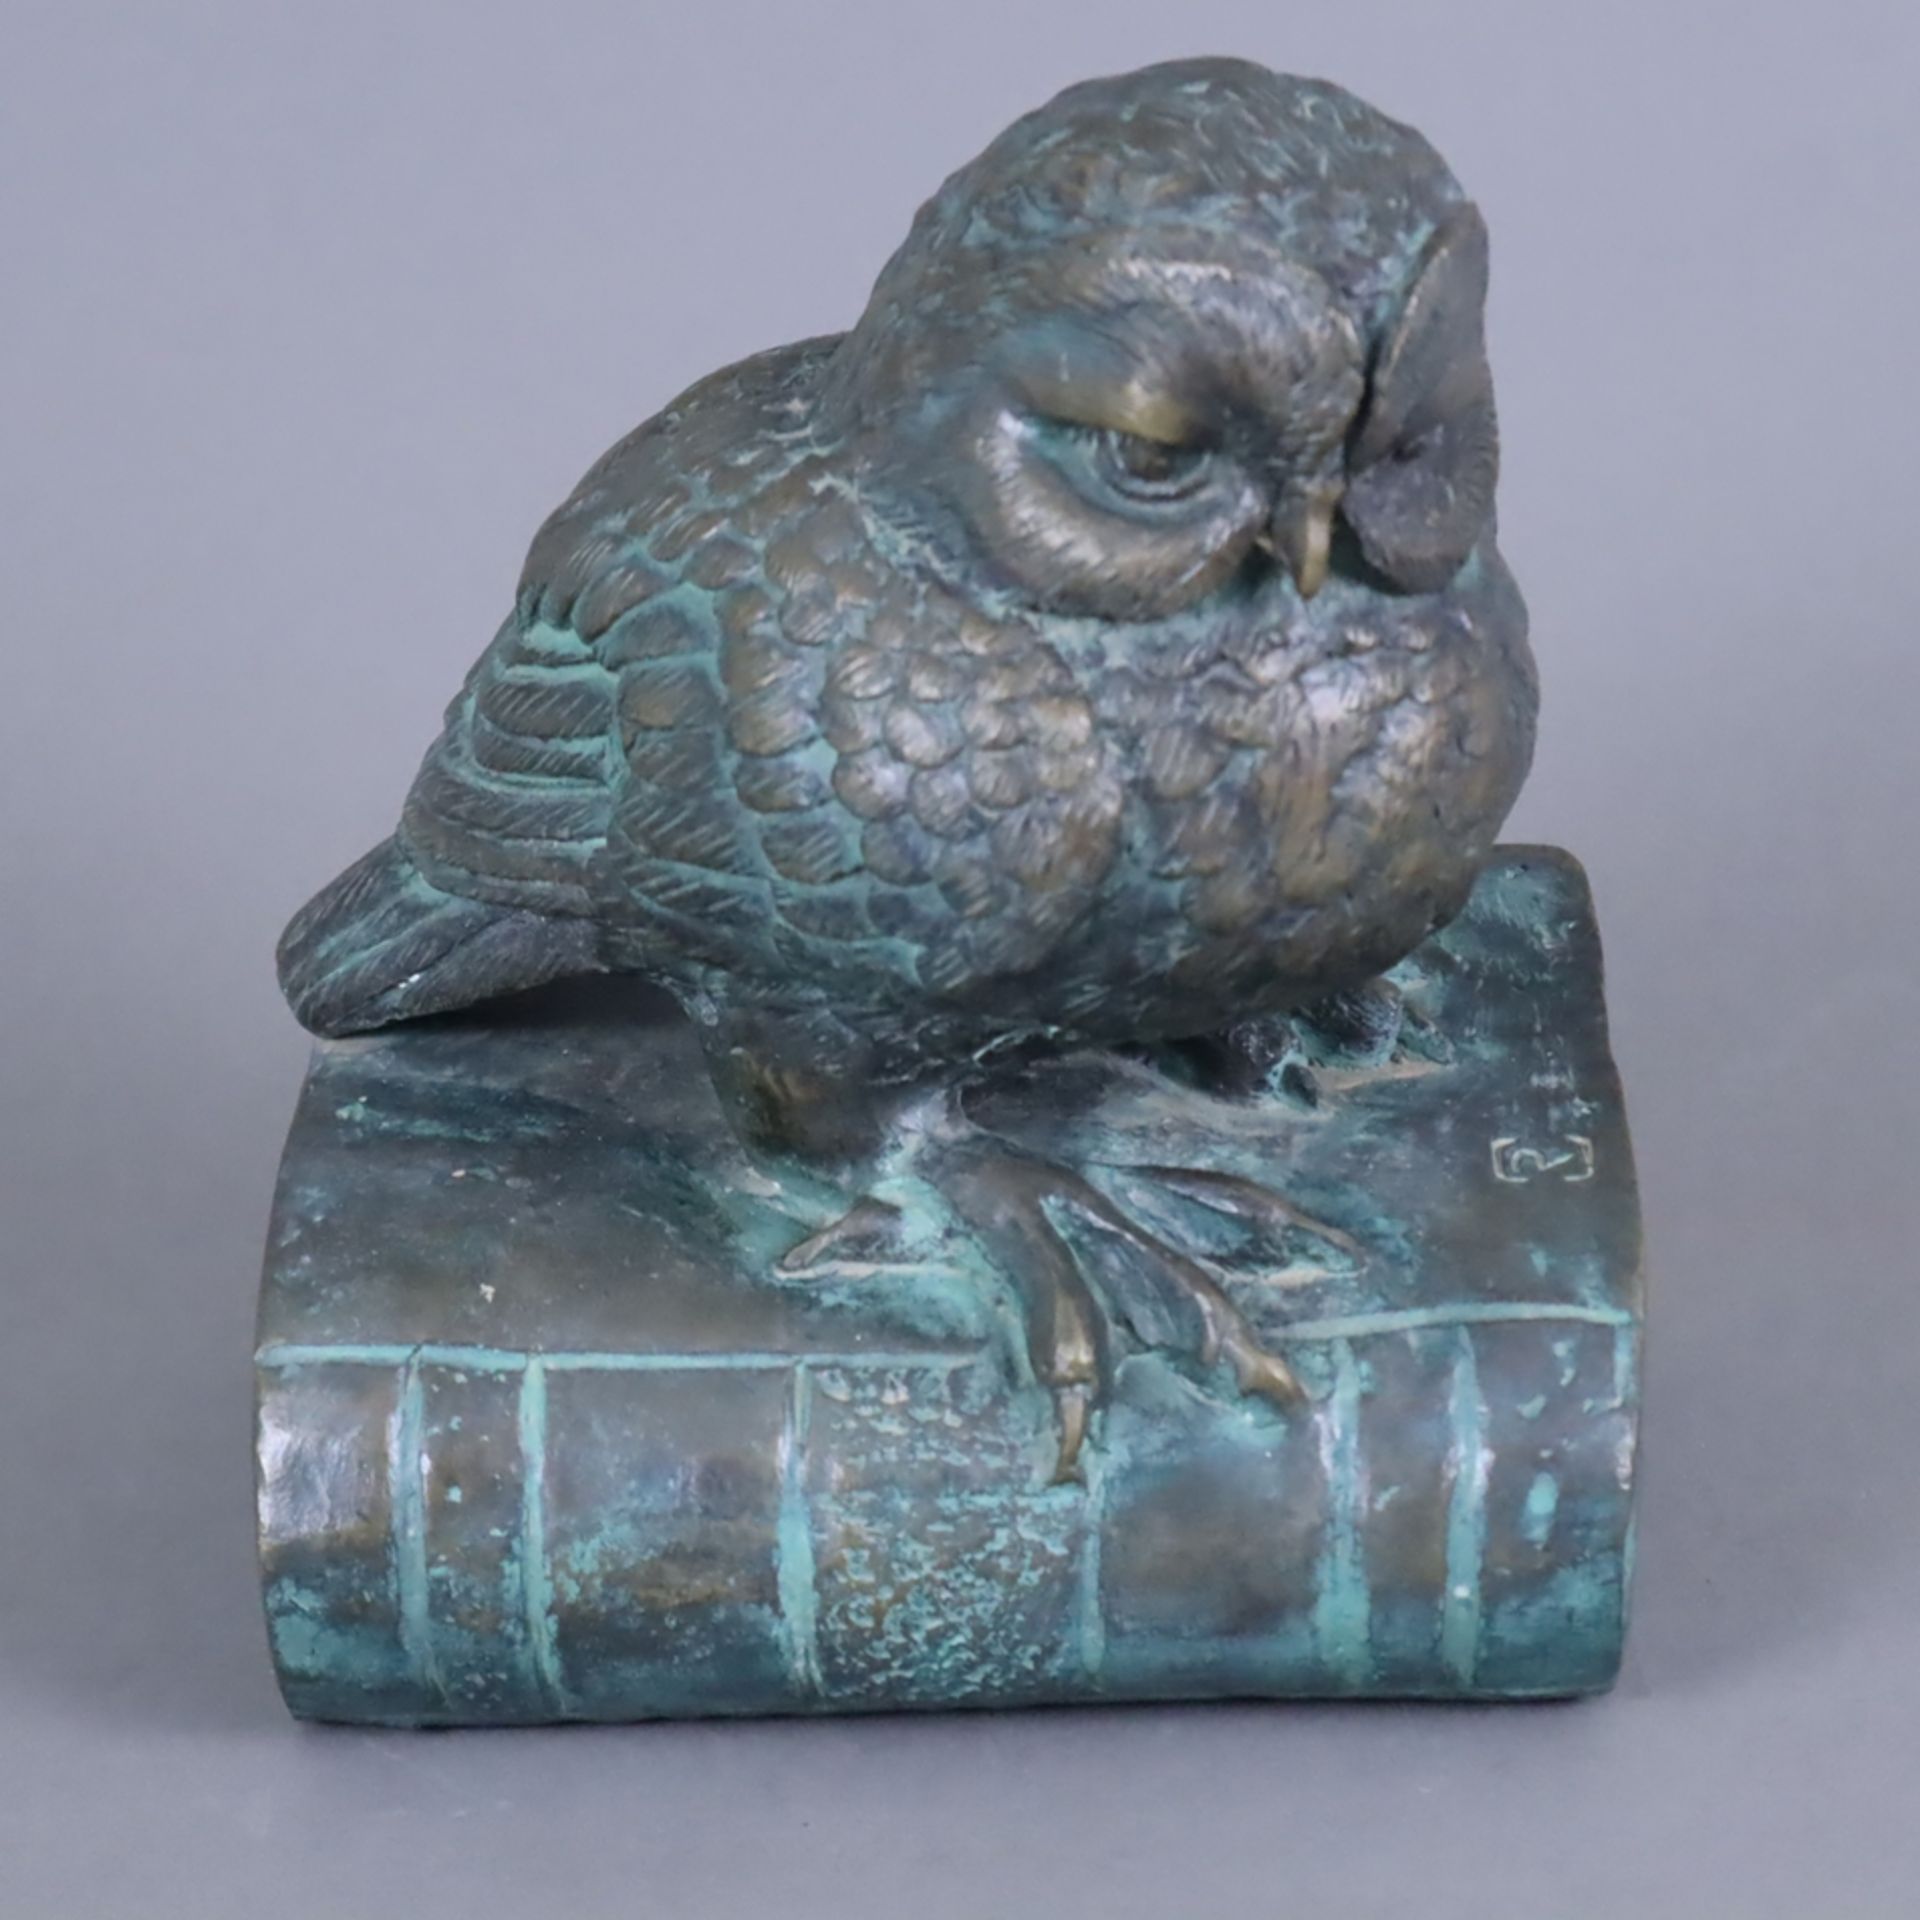 Büchereule - Bronze, patiniert, auf einem geschlossenen Buch sitzende kleine Eule als allegorische 